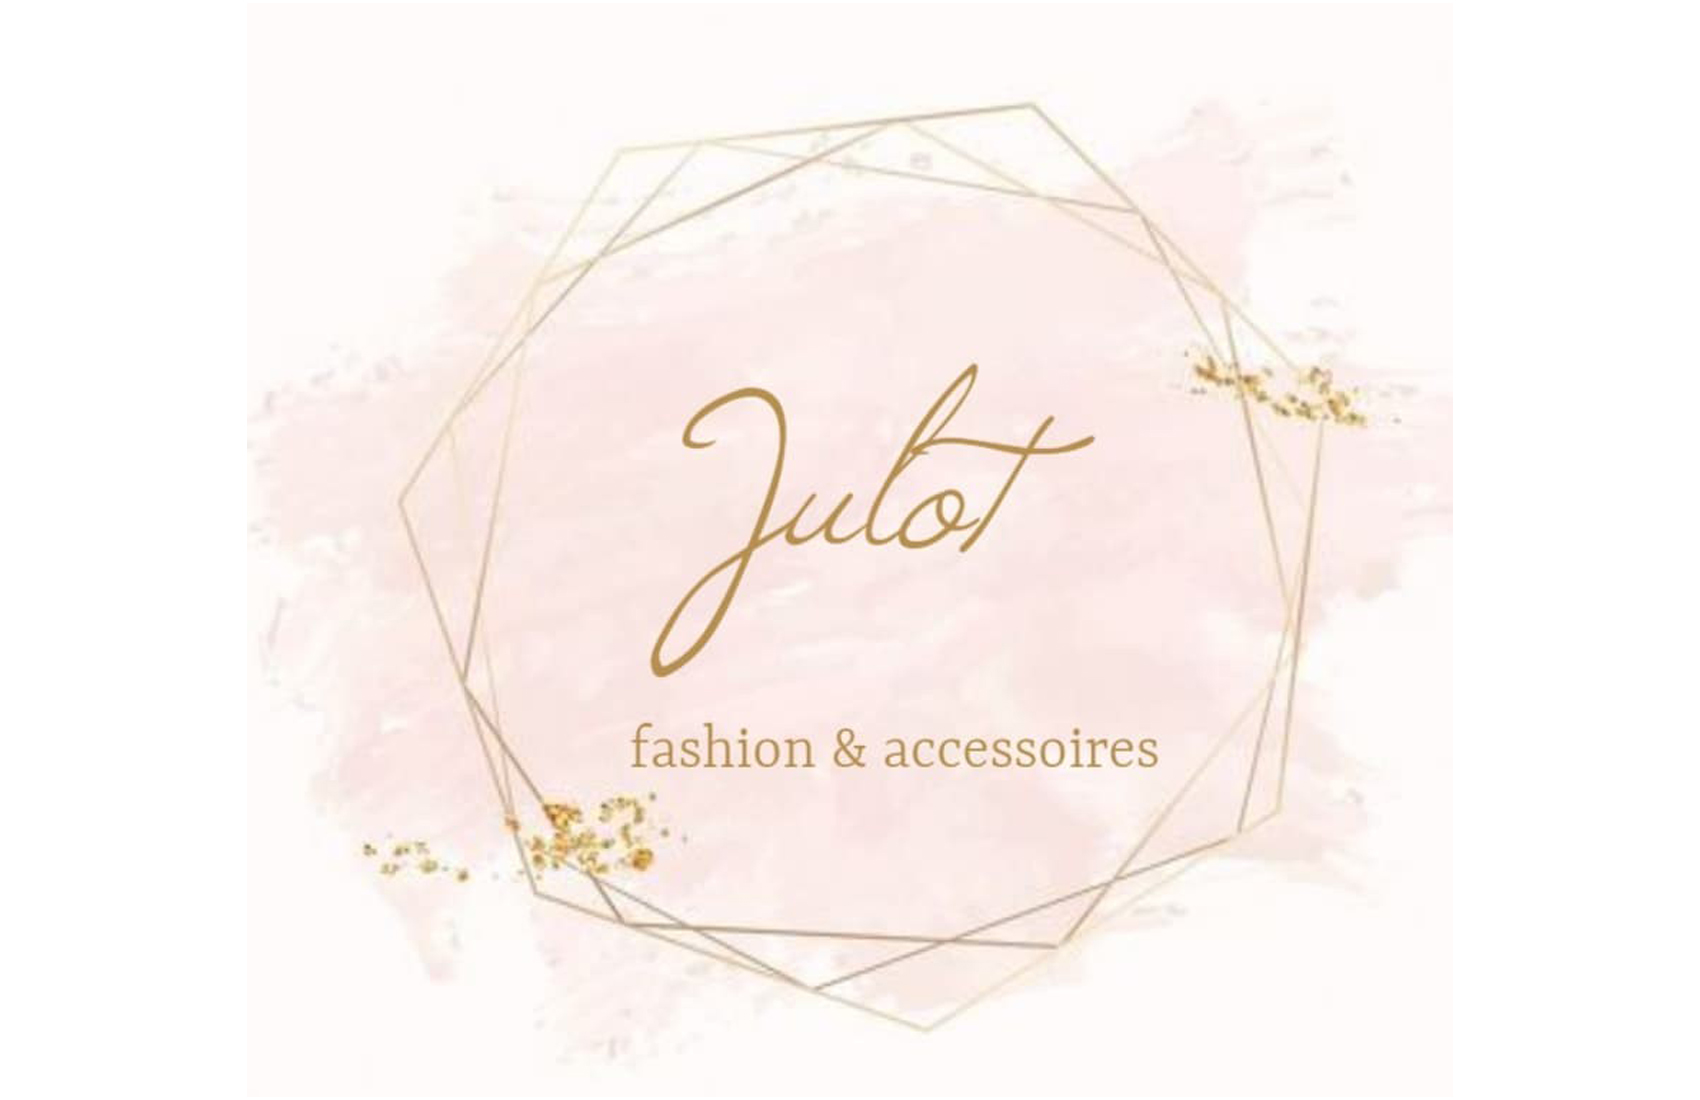 Fashion By Julot